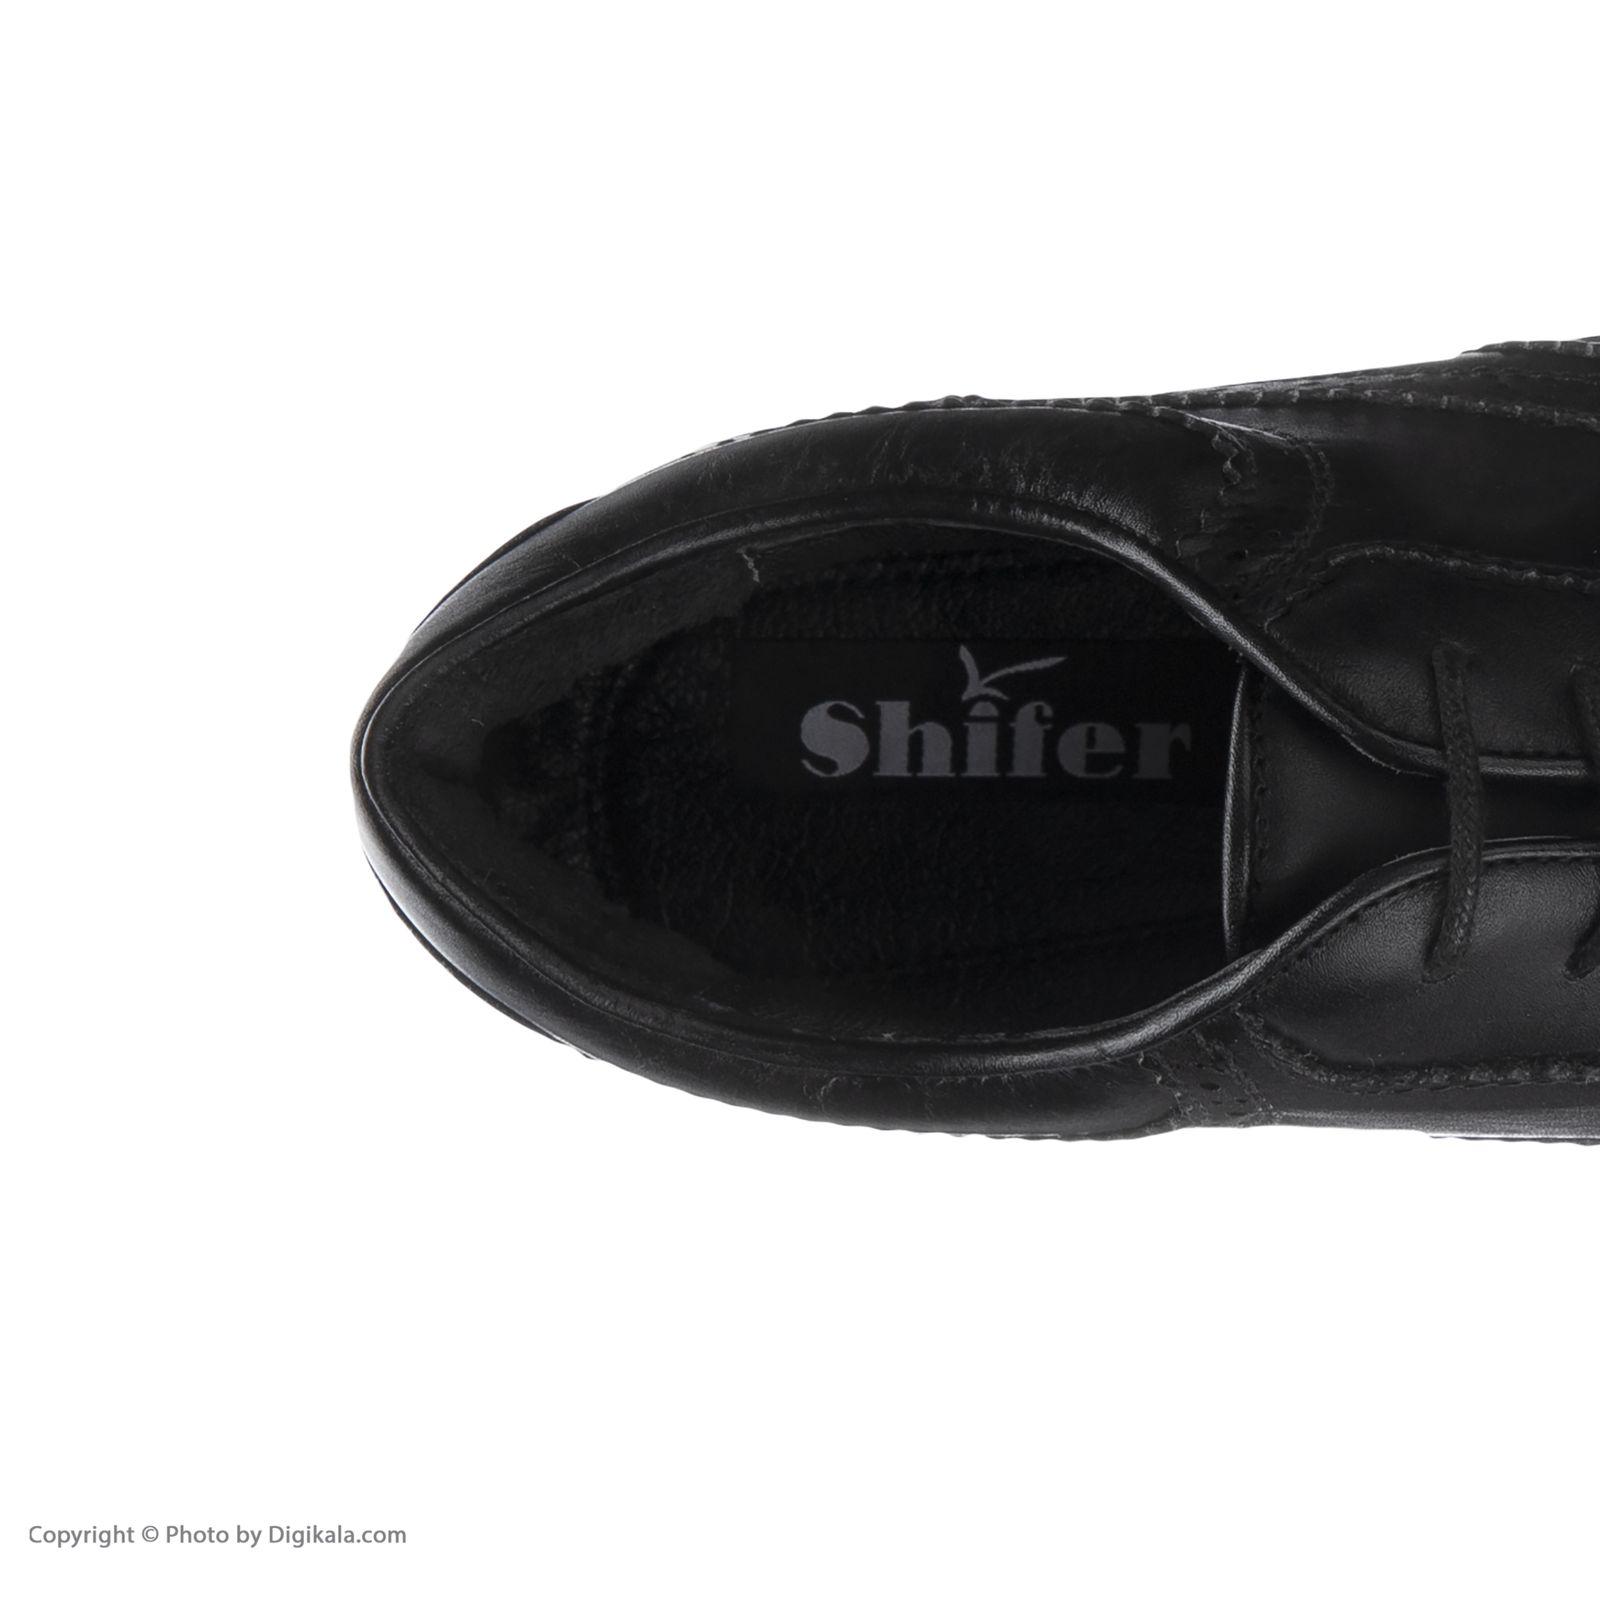 کفش مردانه شیفر مدل 7368b503101101 -  - 5